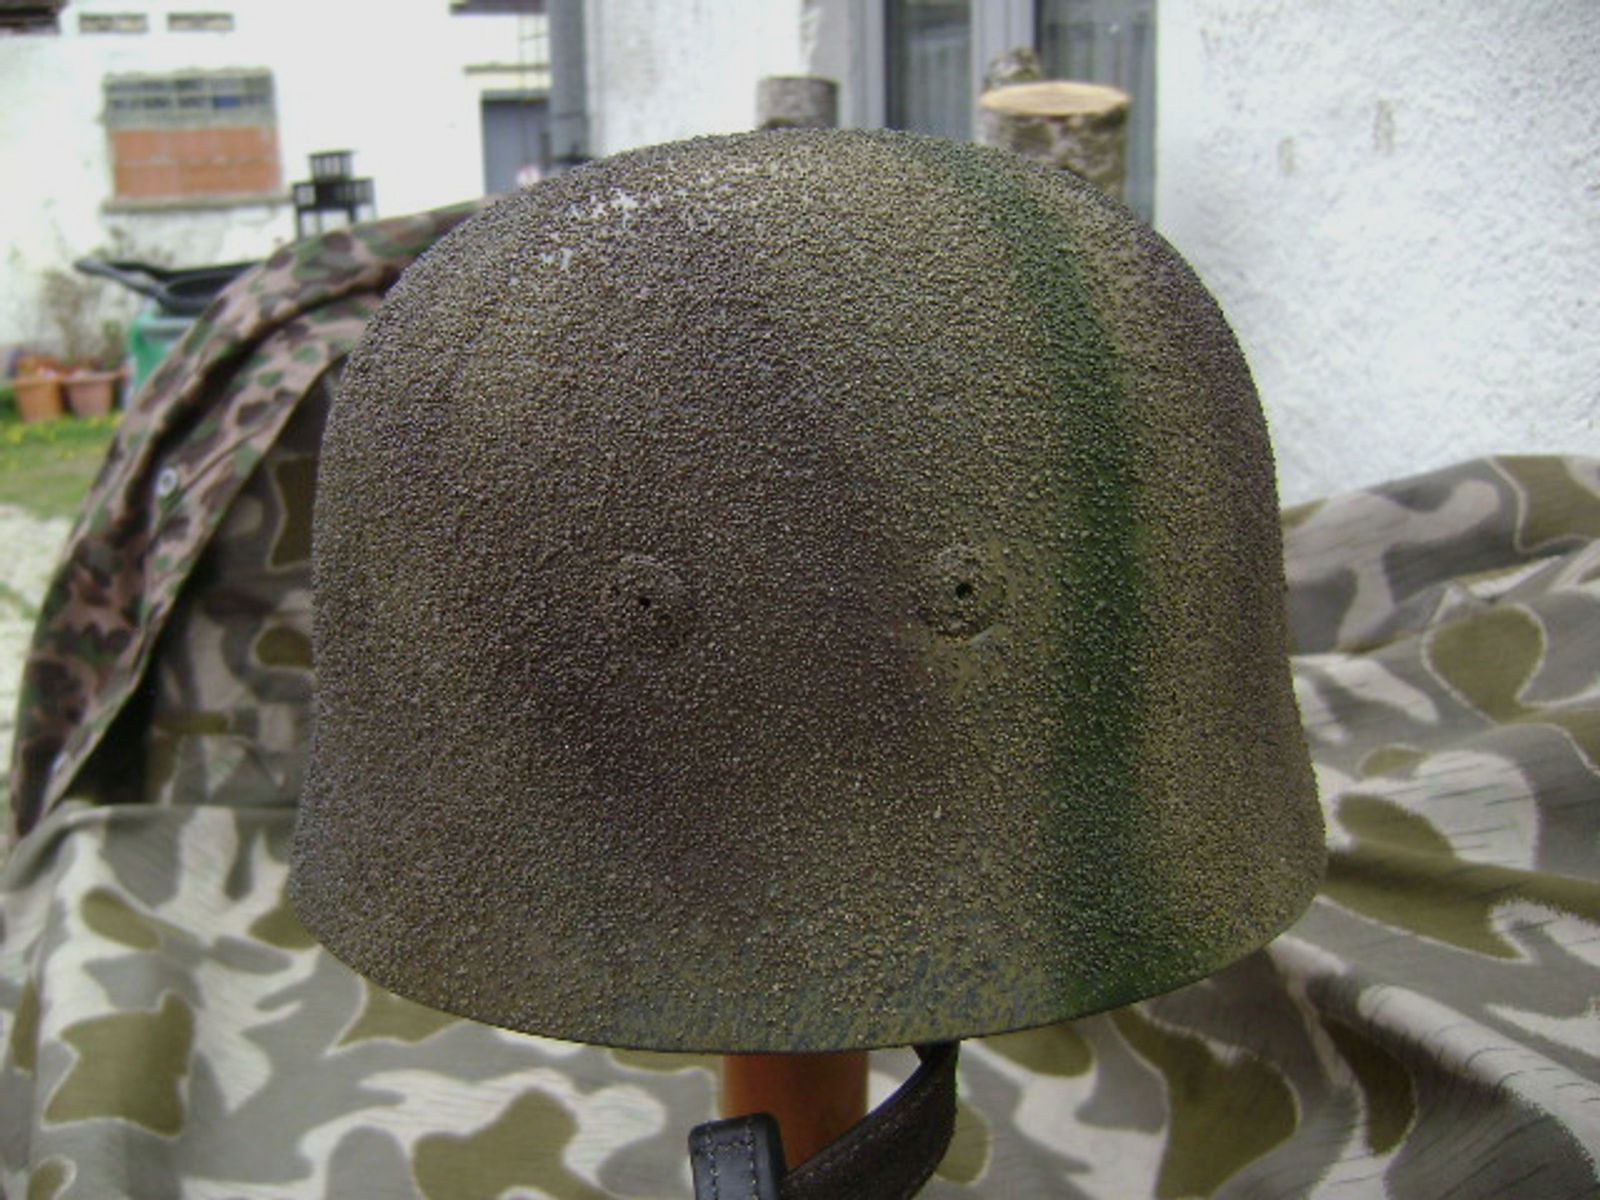 M38 Stahlhelm Sammleranfertigung ( FG42 MP40 STG44 K43 K98 )